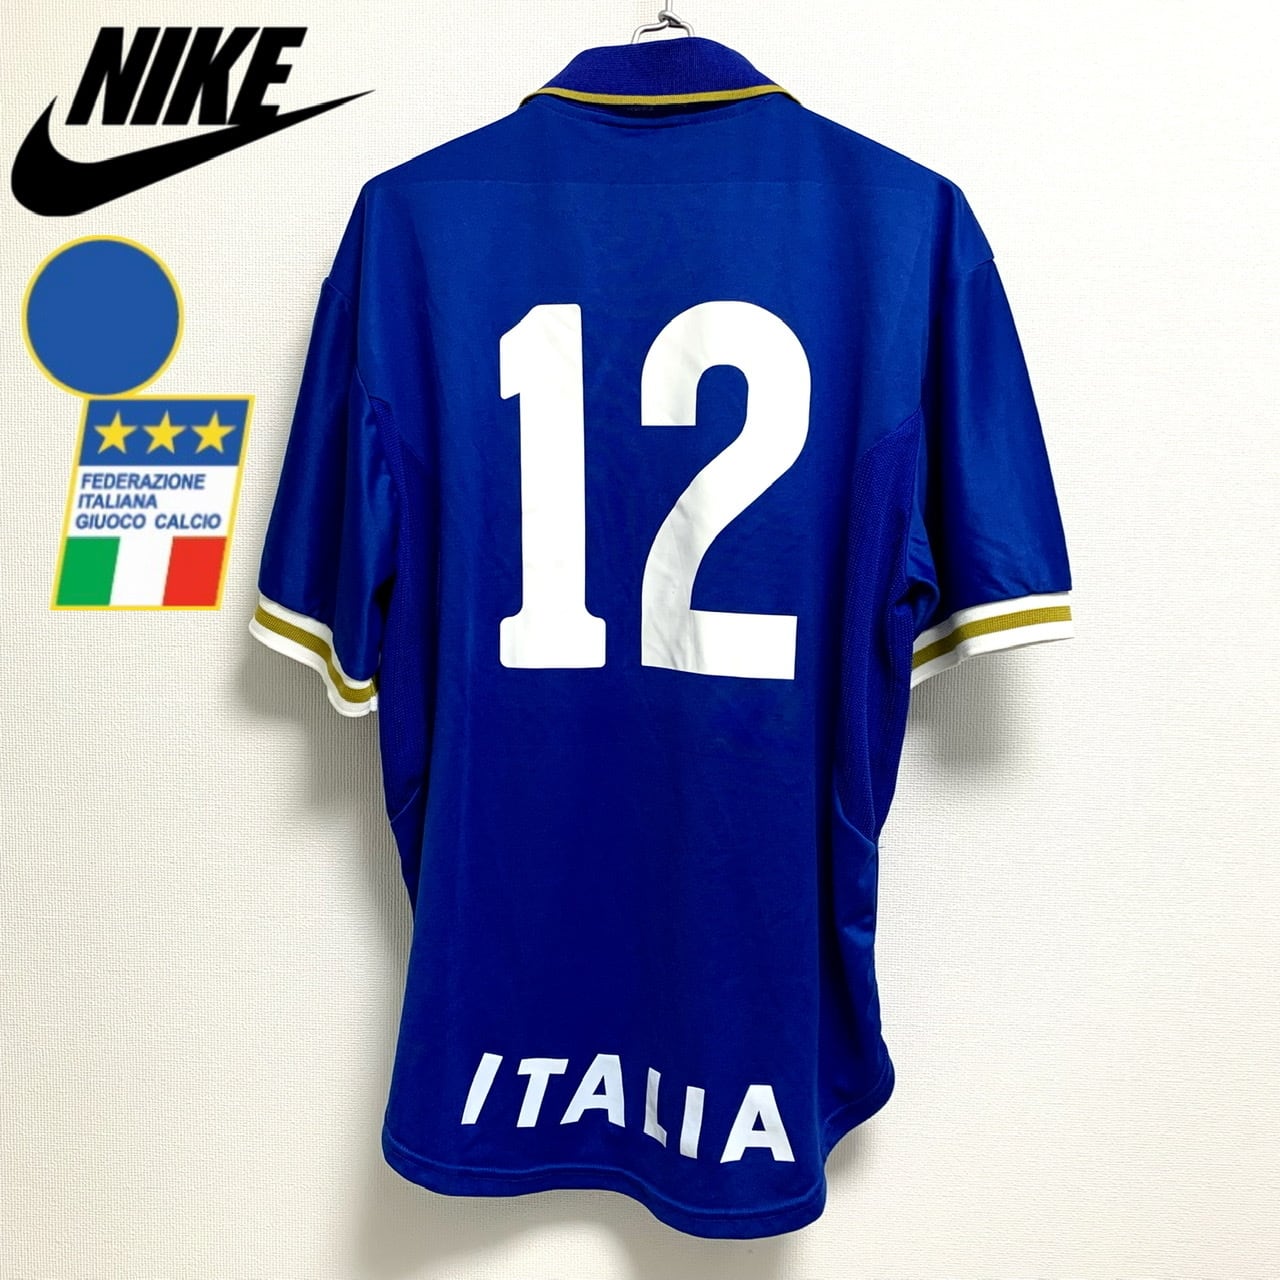 激レア 90s NIKE premier ITALY サッカー イタリア代表